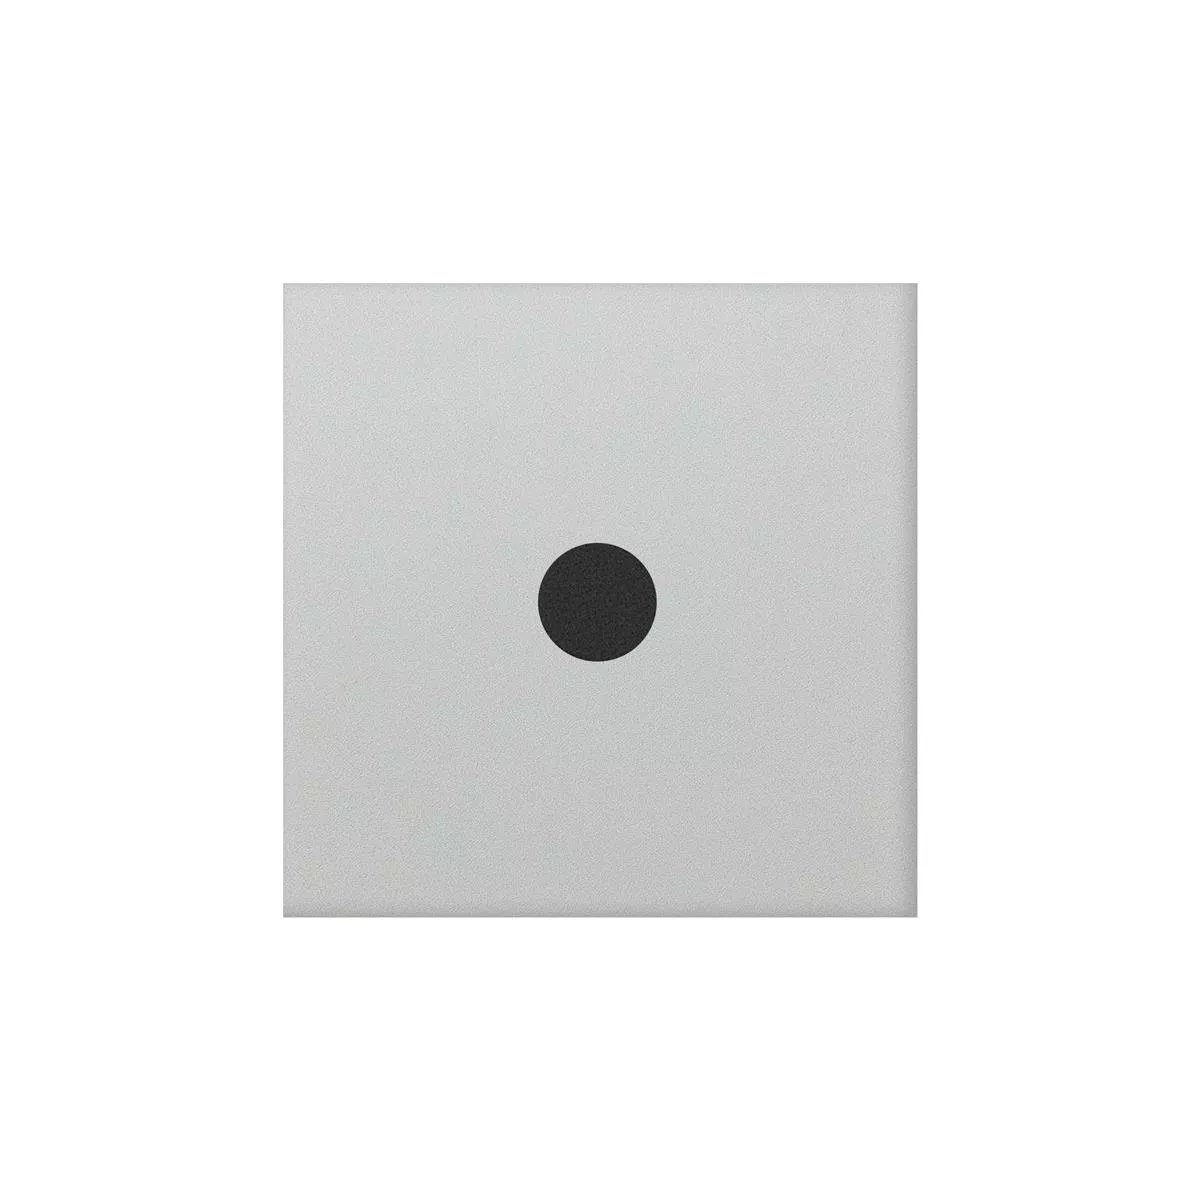 Porcellanato Fliser Genexia Sort Hvid Decor 3 Rosone  4,6x4,6cm